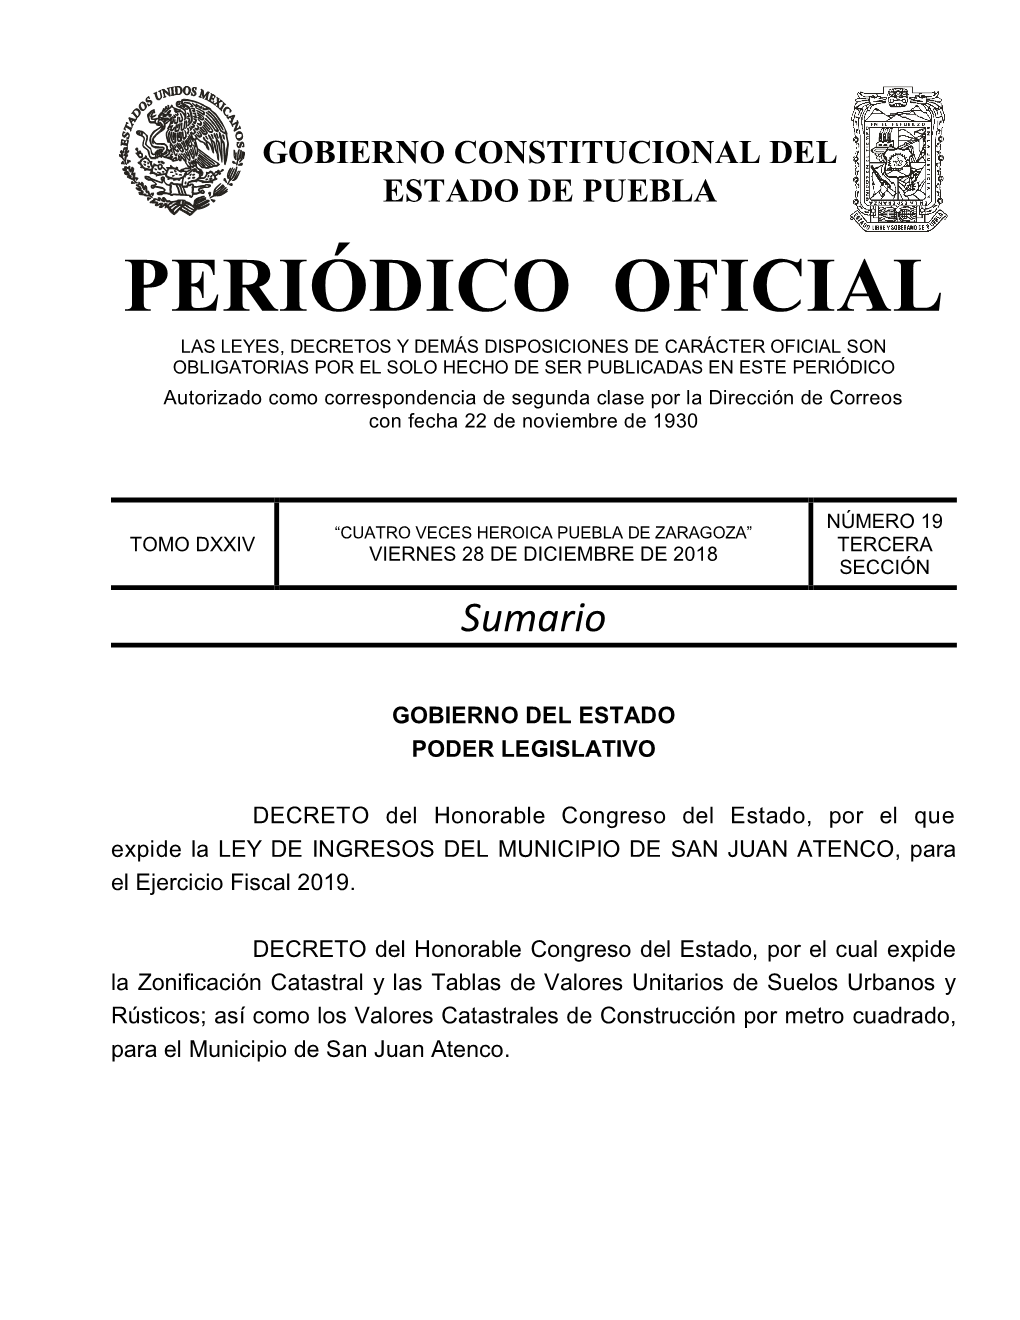 LEY DE INGRESOS DEL MUNICIPIO DE SAN JUAN ATENCO, Para El Ejercicio Fiscal 2019